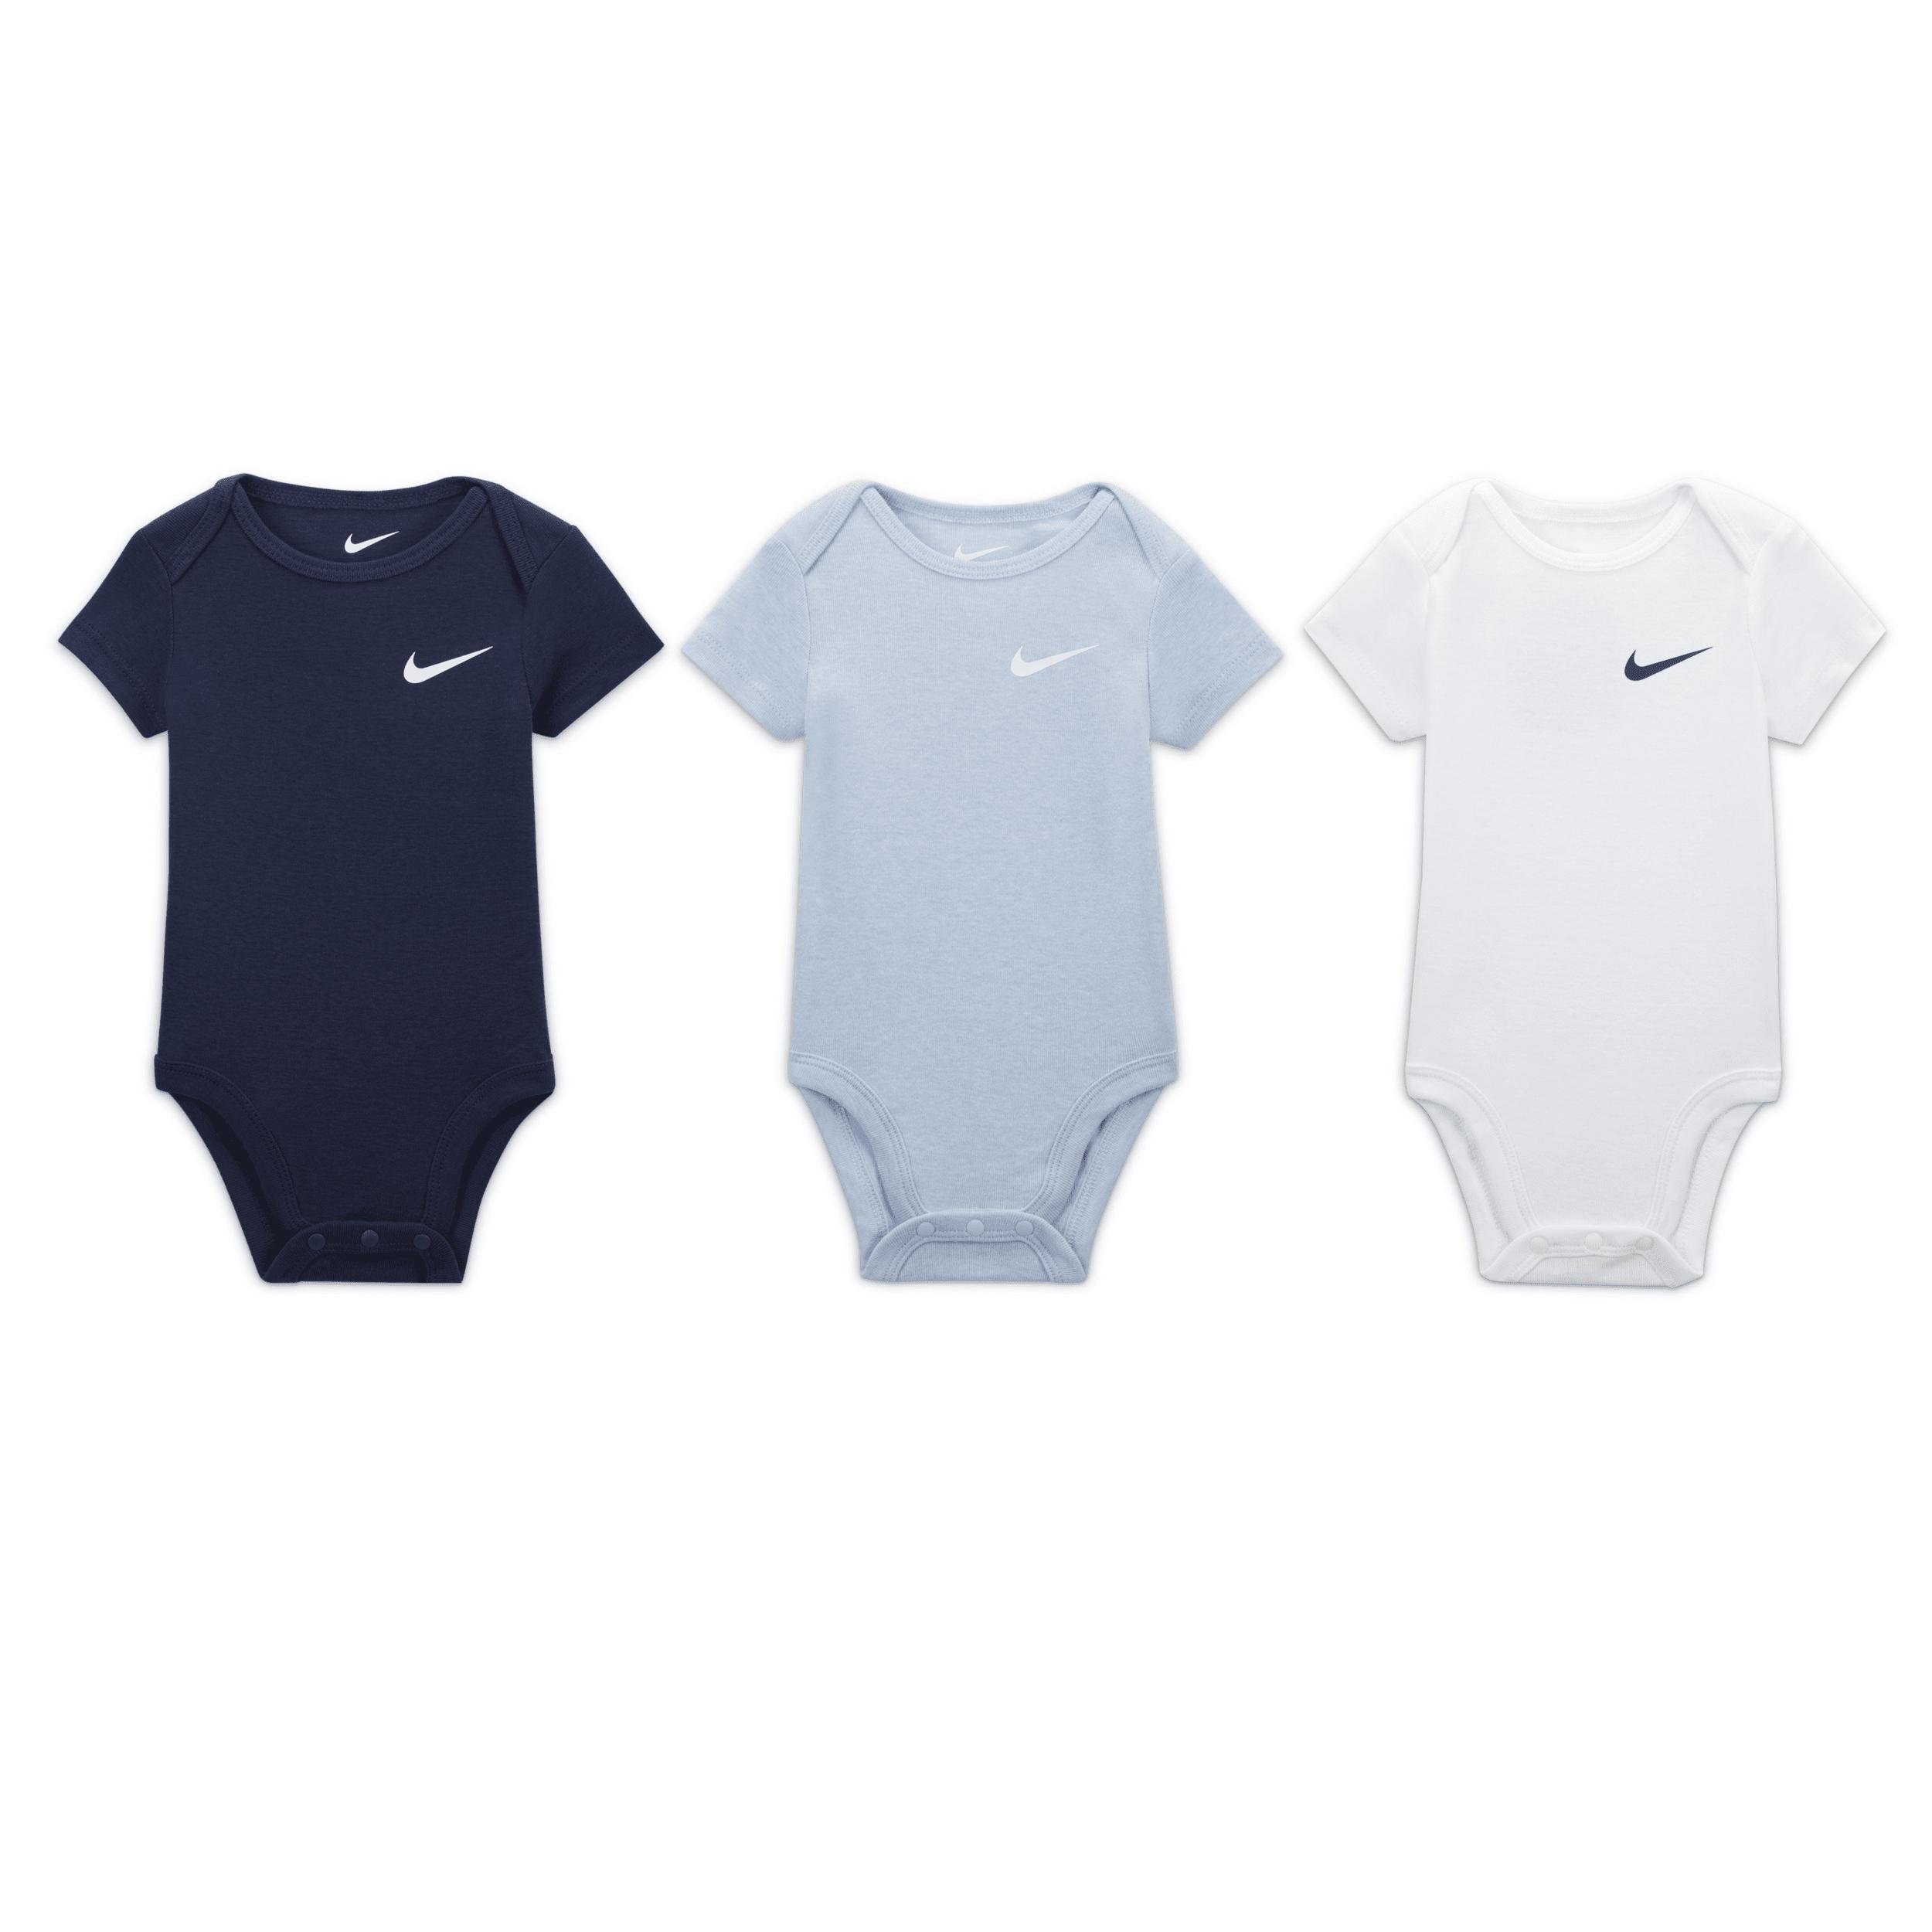 Nike Mini Me Baby (0-9M) 3-Pack Bodysuits by NIKE